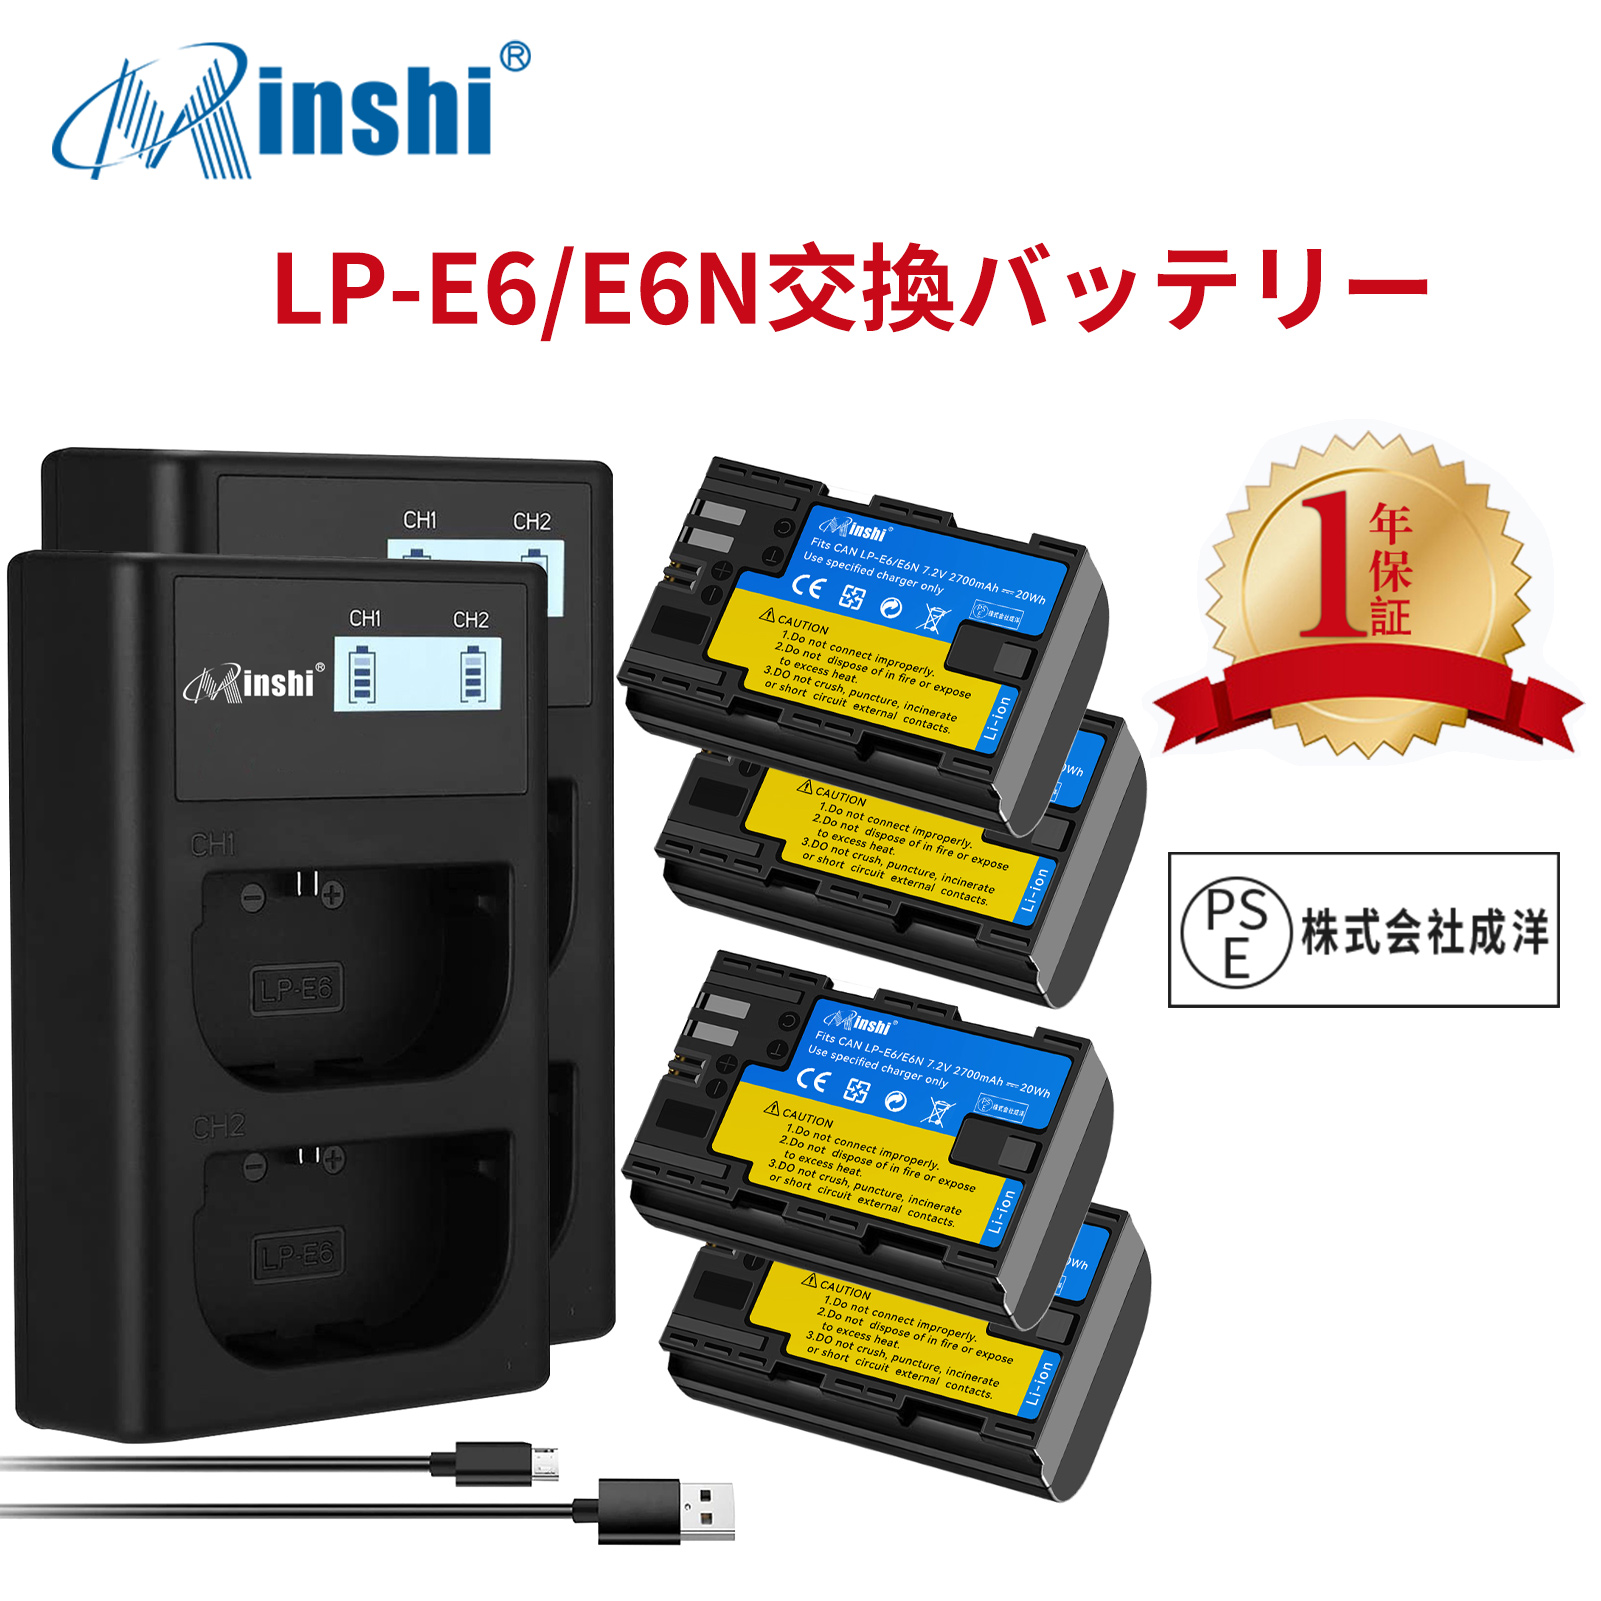 【4個セット&2個充電器】minshi Canon LP-E6 EOS 6D LP-E6 【2700mAh 7.2V 】PSE認定済 高品質 LP-E6NH 交換用バッテリー